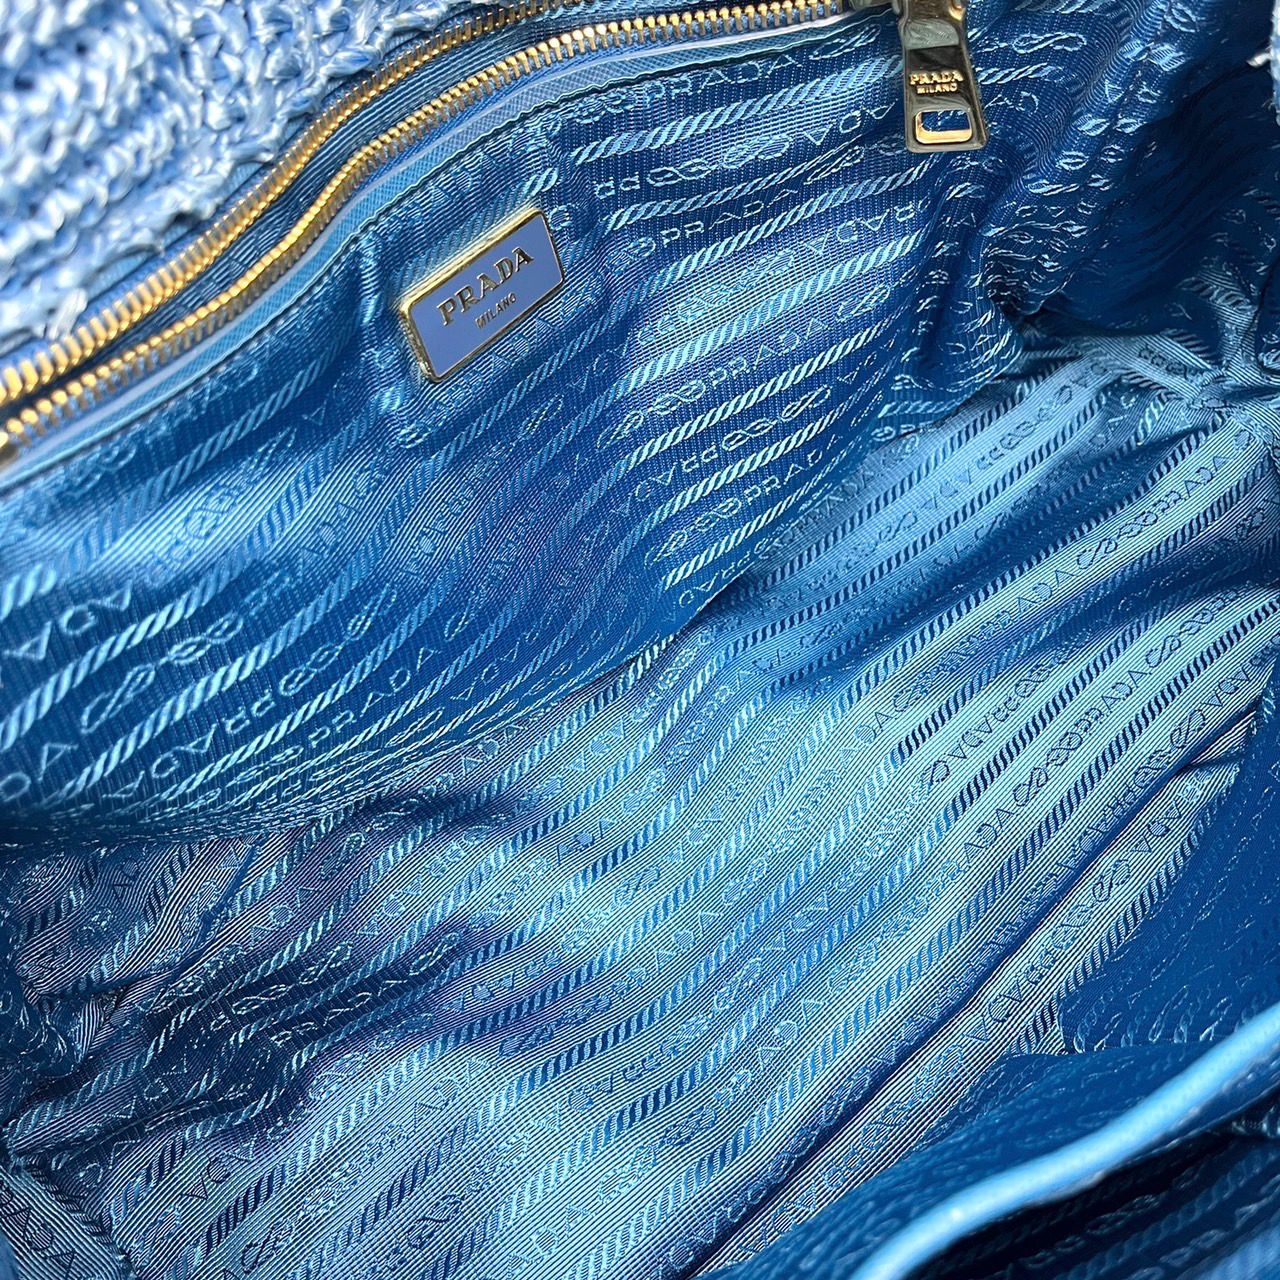 Prada Blue Raffia Bag